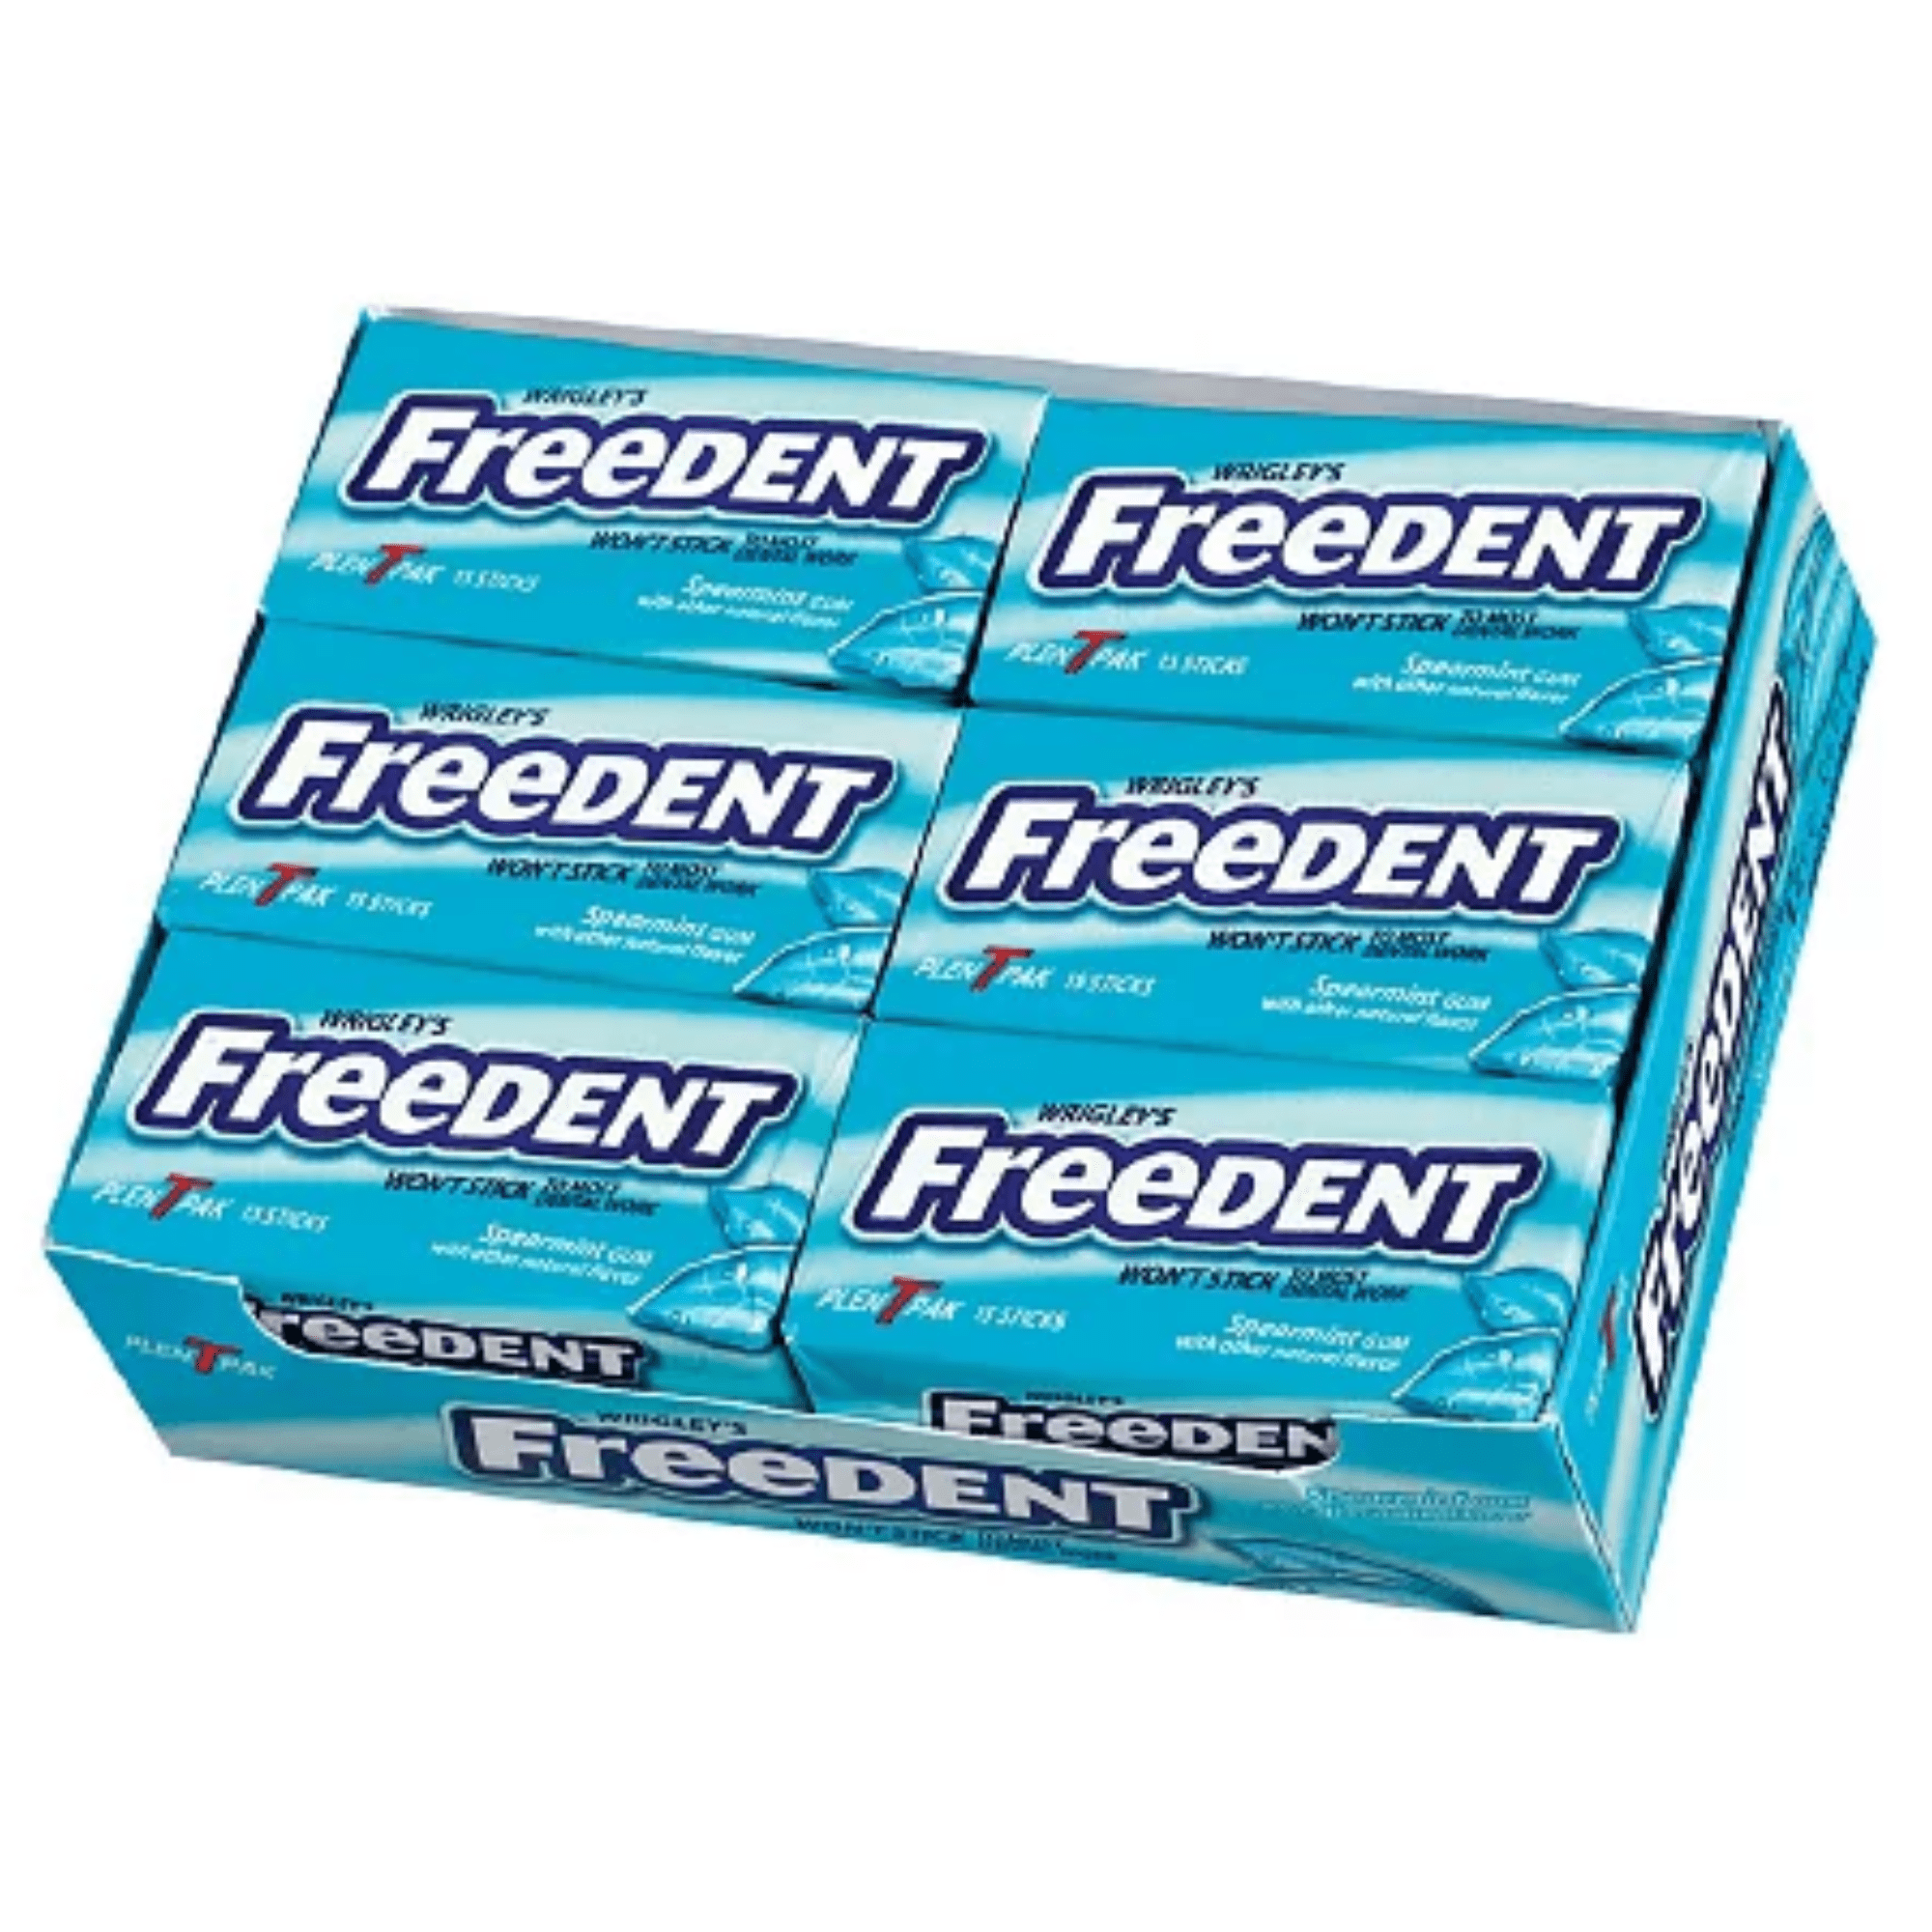 Freedent Gum 15 ea, Chewing Gum